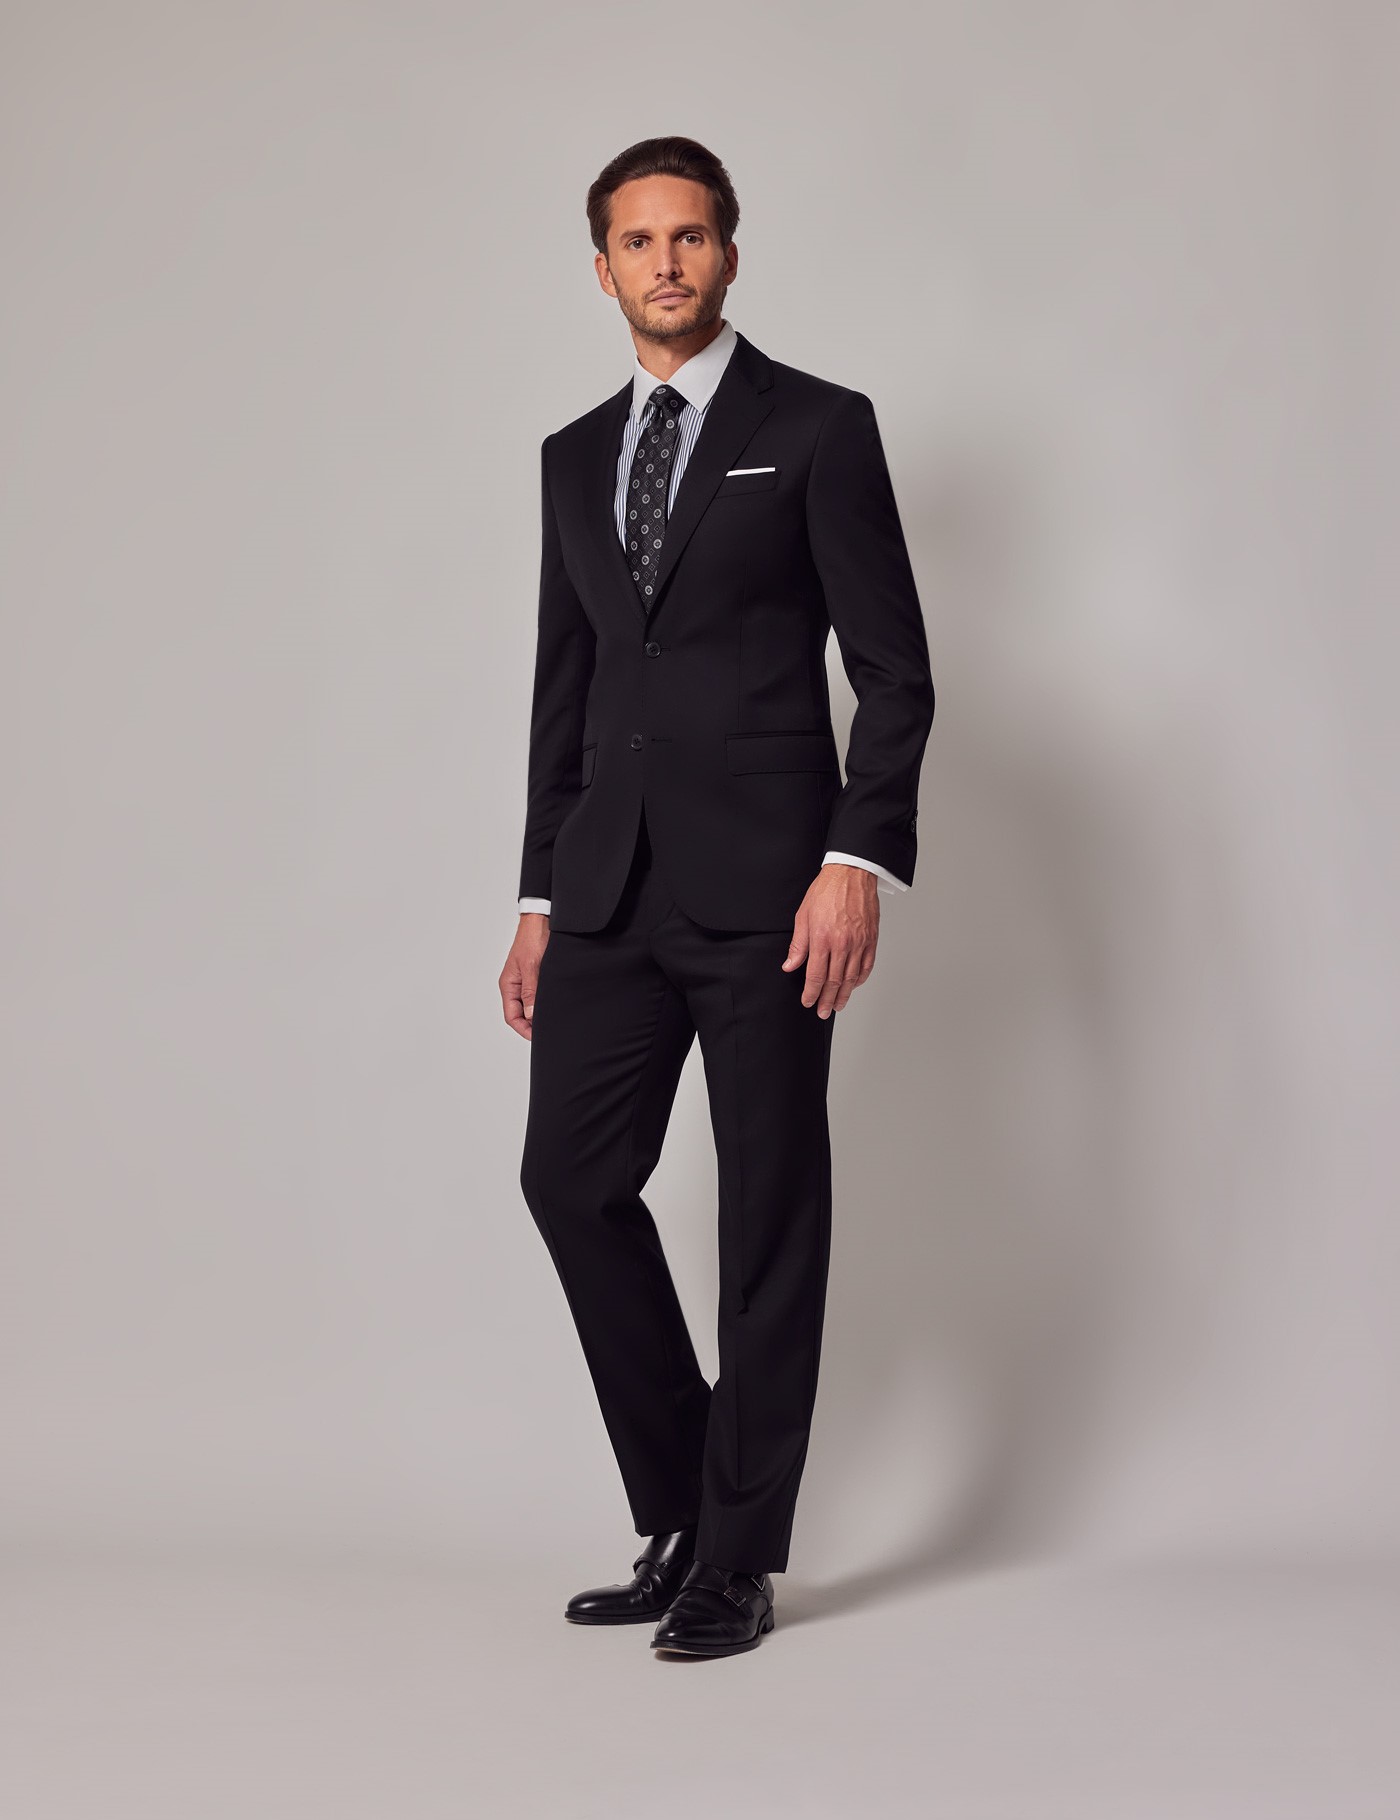 Schwarzer Anzug - Premium Qualität | Hawes & Curtis